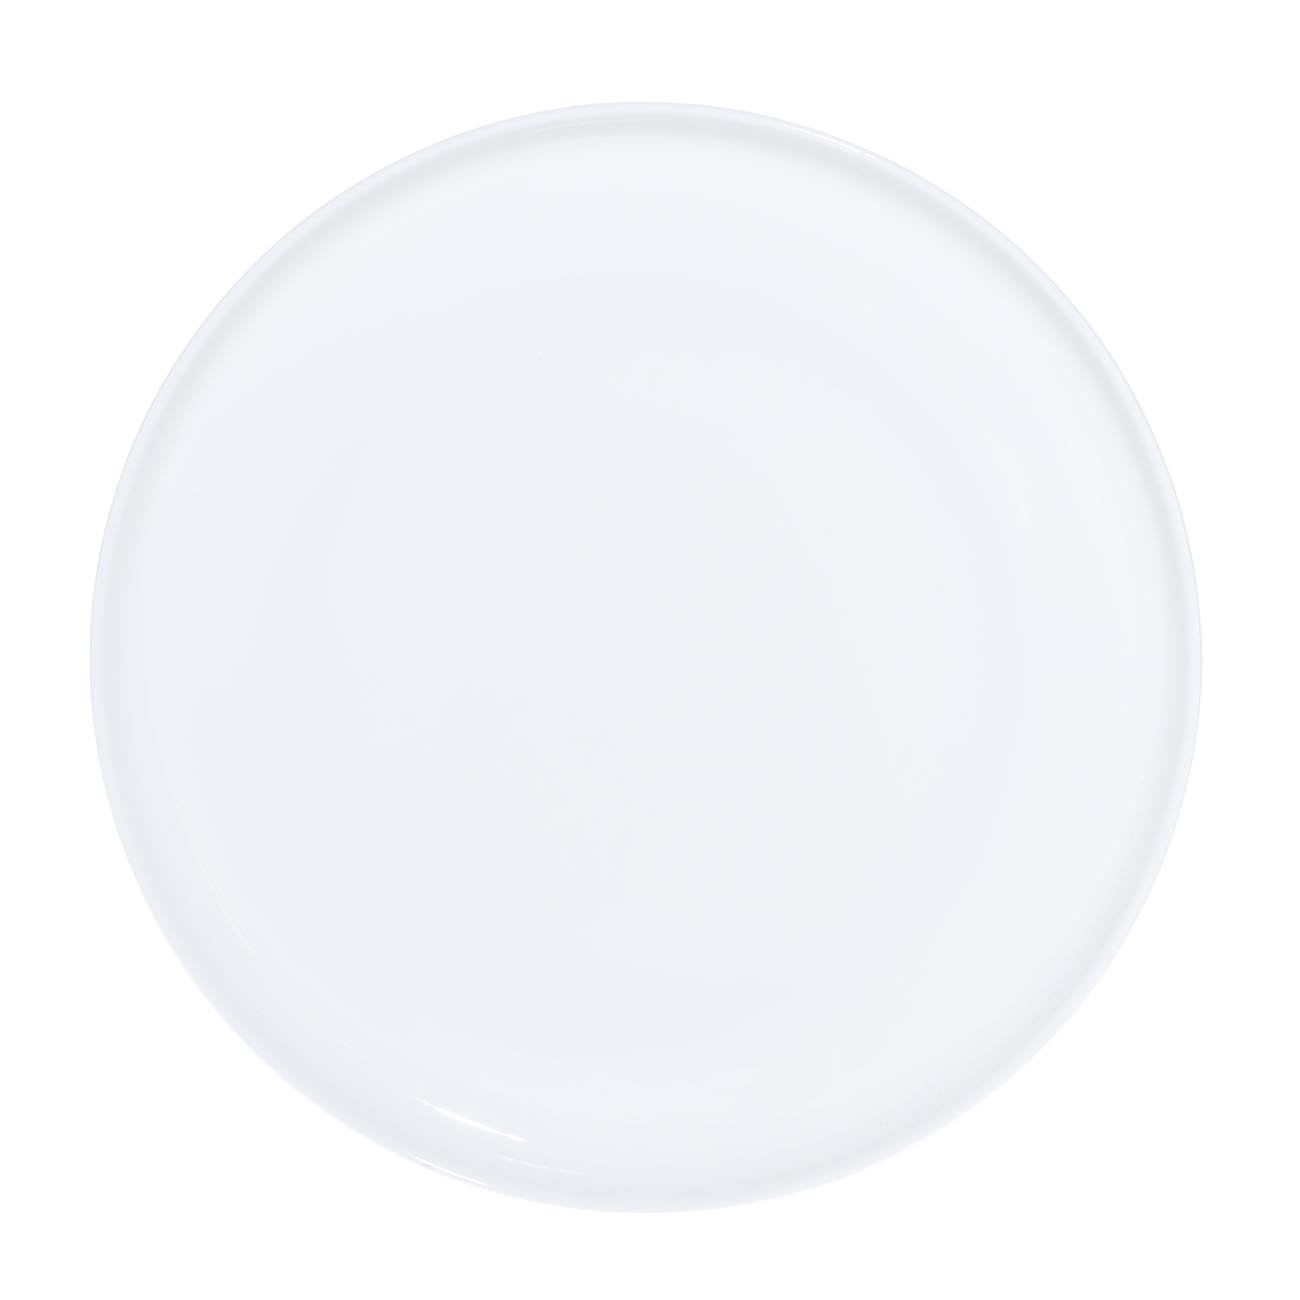 Сервиз обеденный, 6 перс, 18 пр, фарфор F, белый, Ideal white изображение № 4